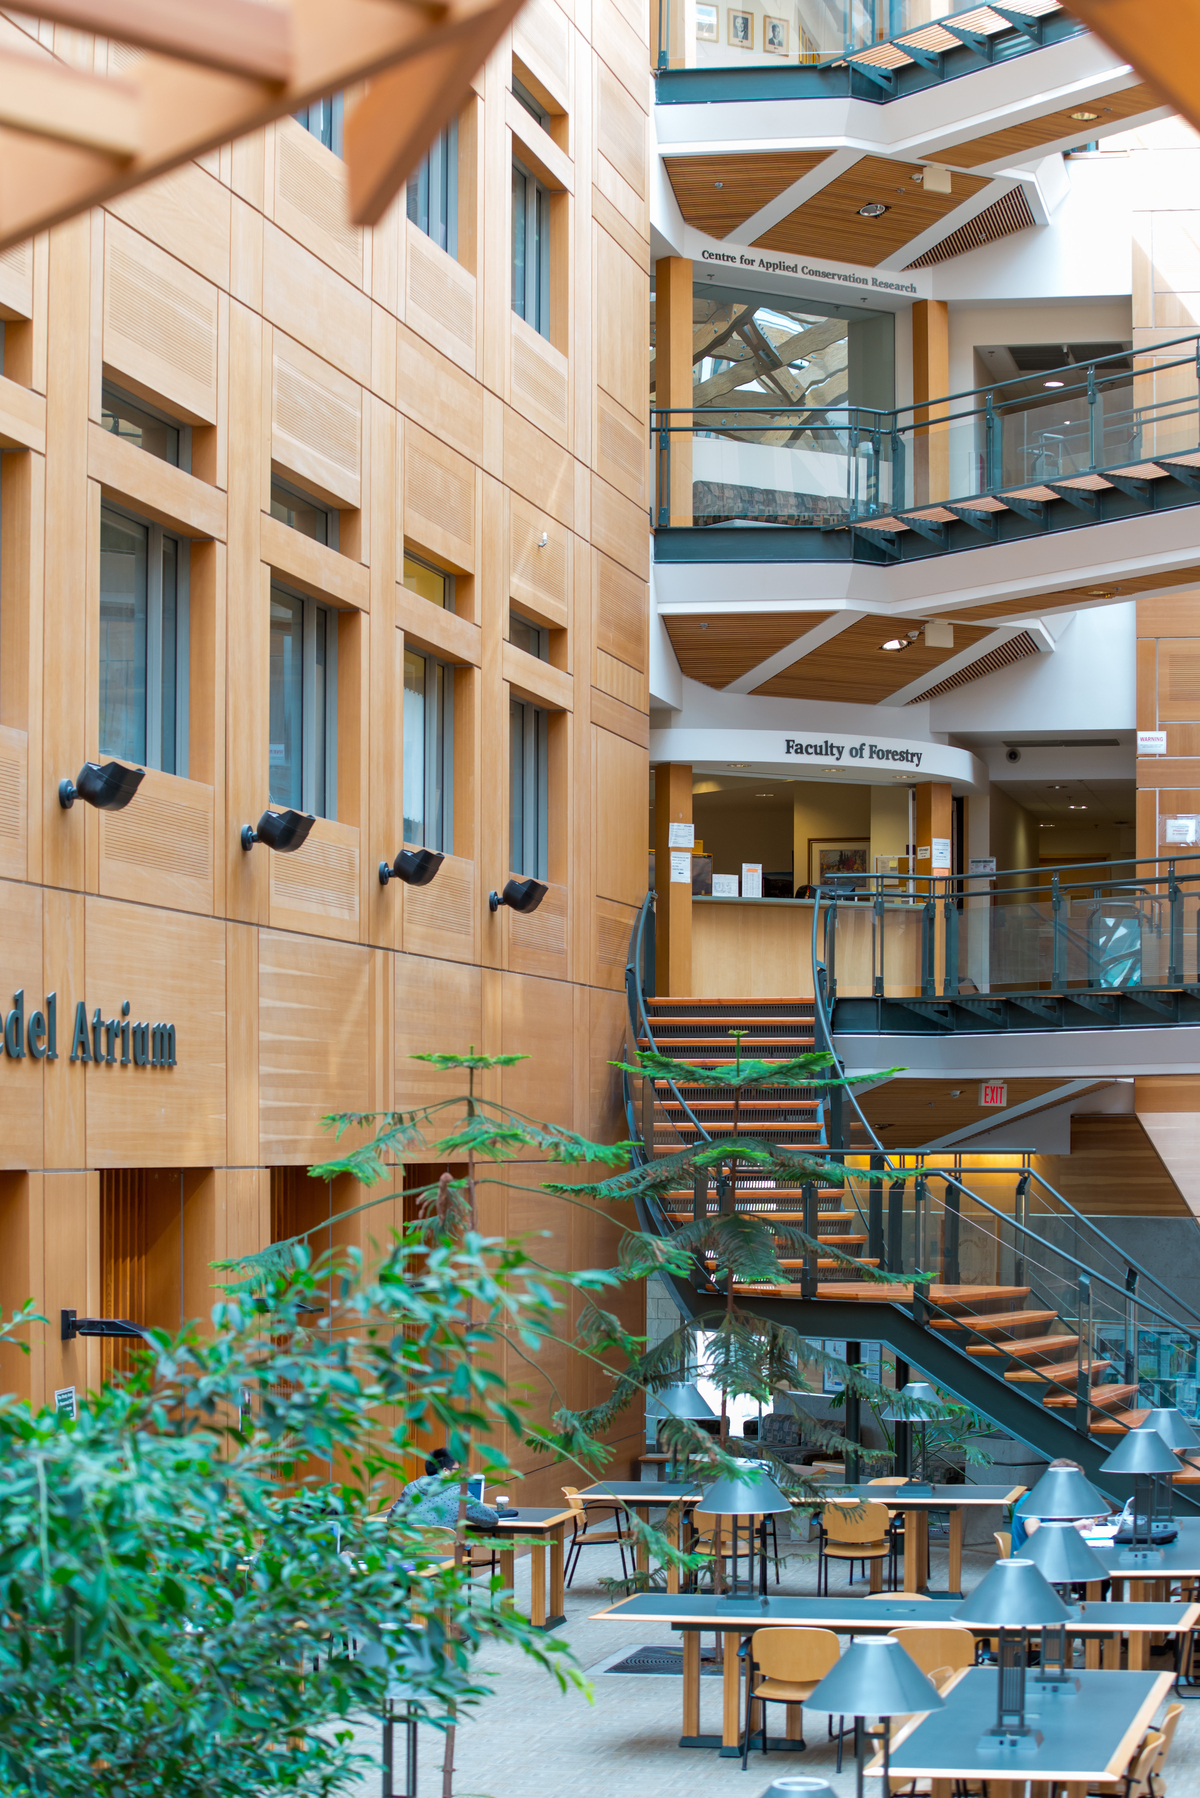 多层大块木材和装饰木材，包括:墙板，楼梯台阶，平行绞线木材(PSL)柱，木材装饰和木制品展示在UBC森林科学中心主中庭的室内白天图像中